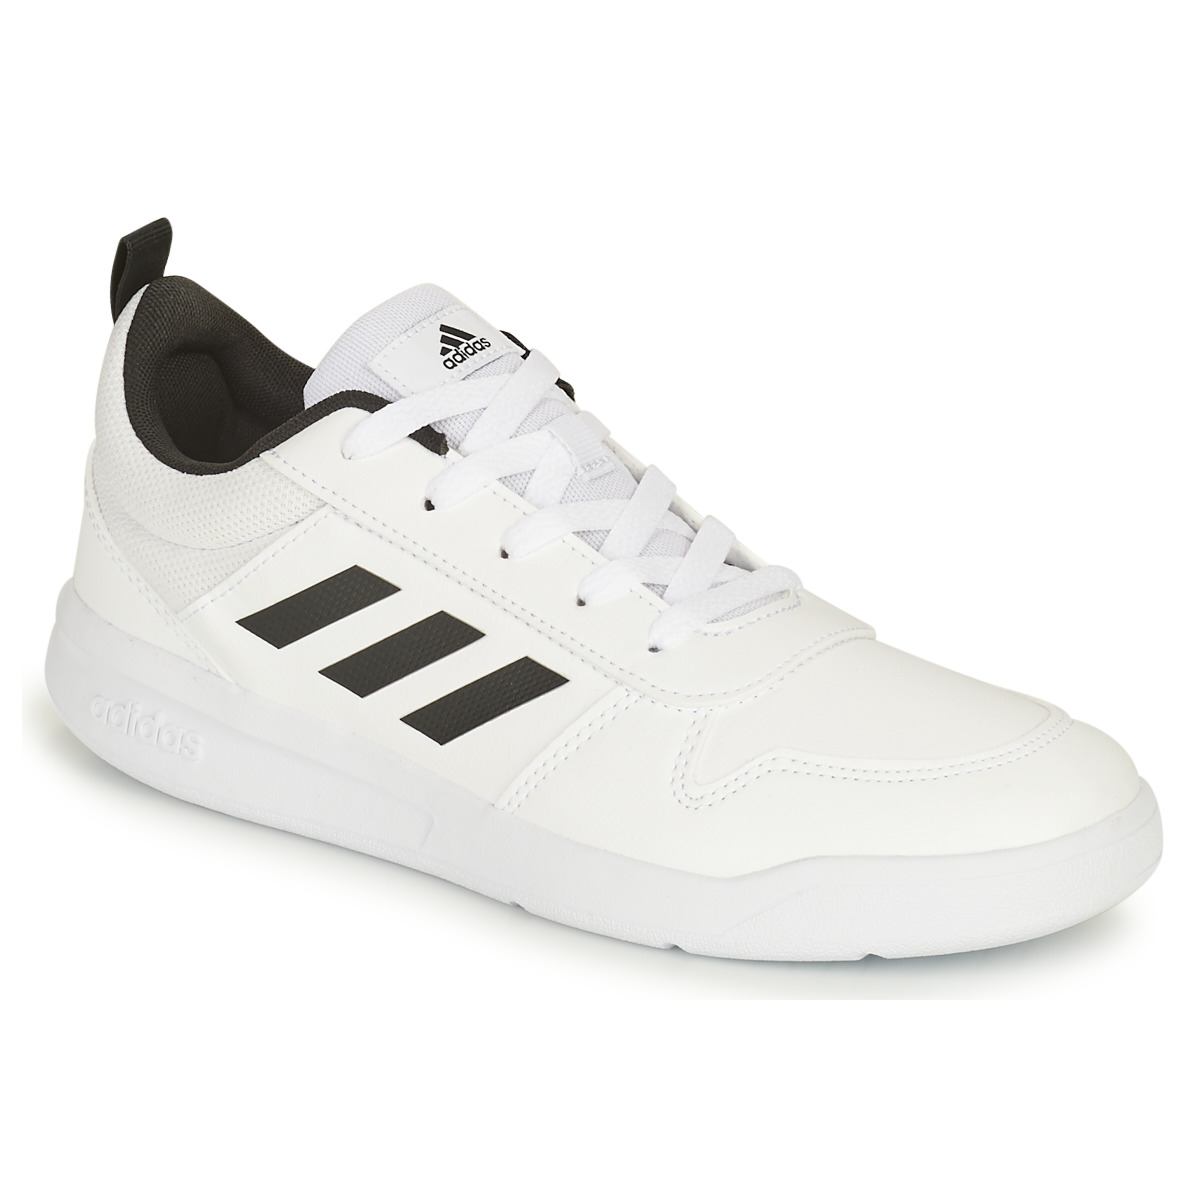 鞋子 儿童 球鞋基本款 adidas Performance 阿迪达斯运动训练 TENSAUR K 白色 / 黑色